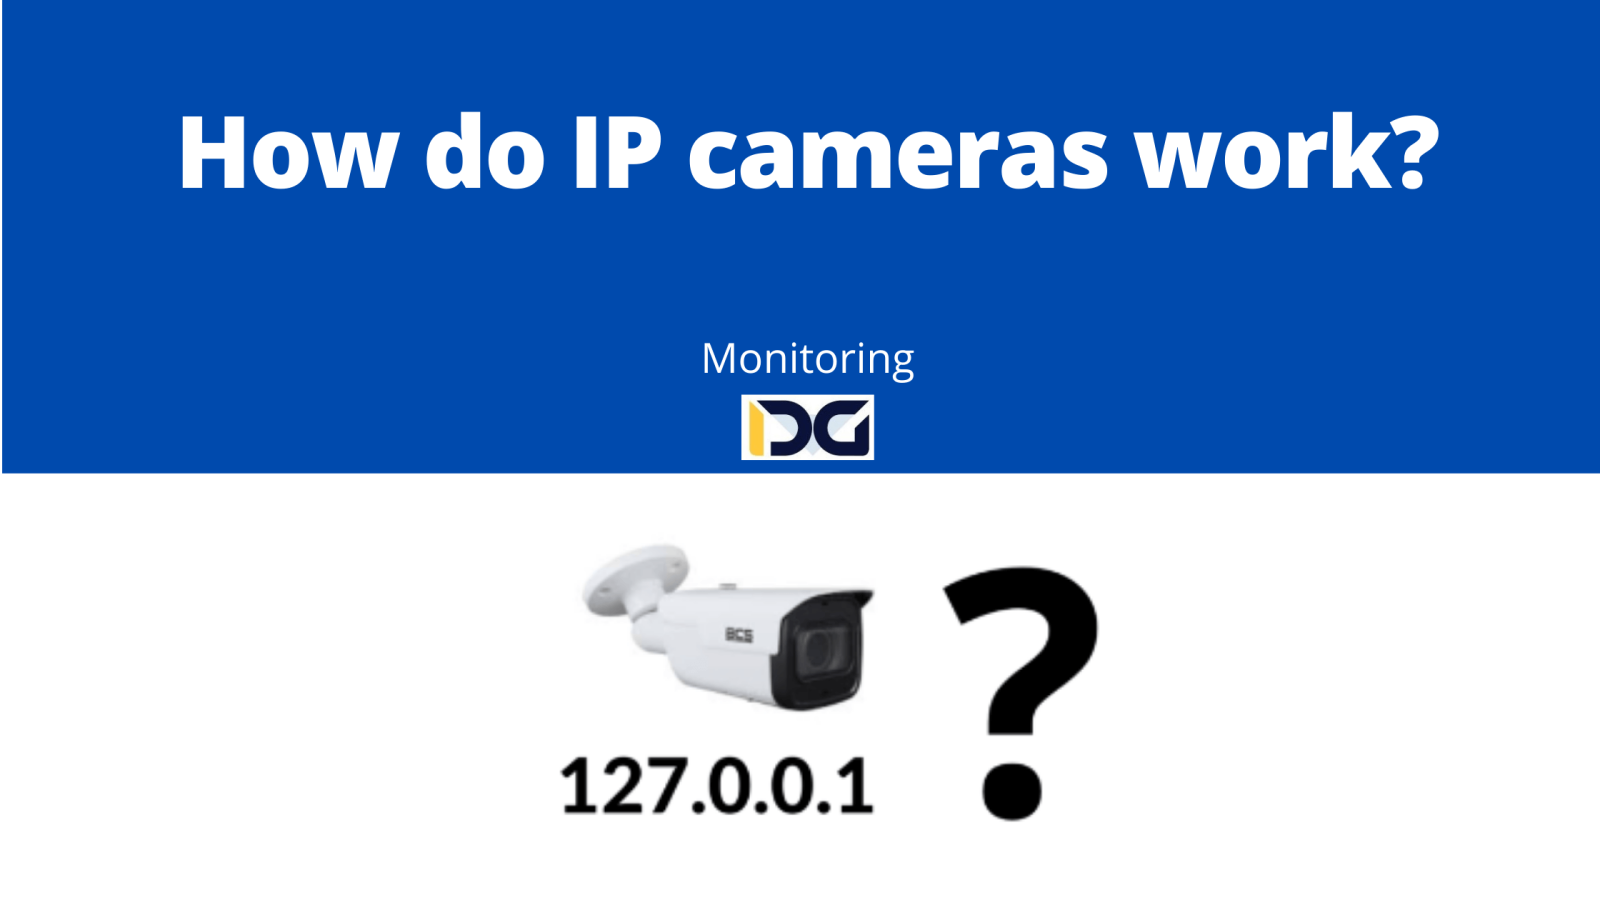 How do IP cameras work?